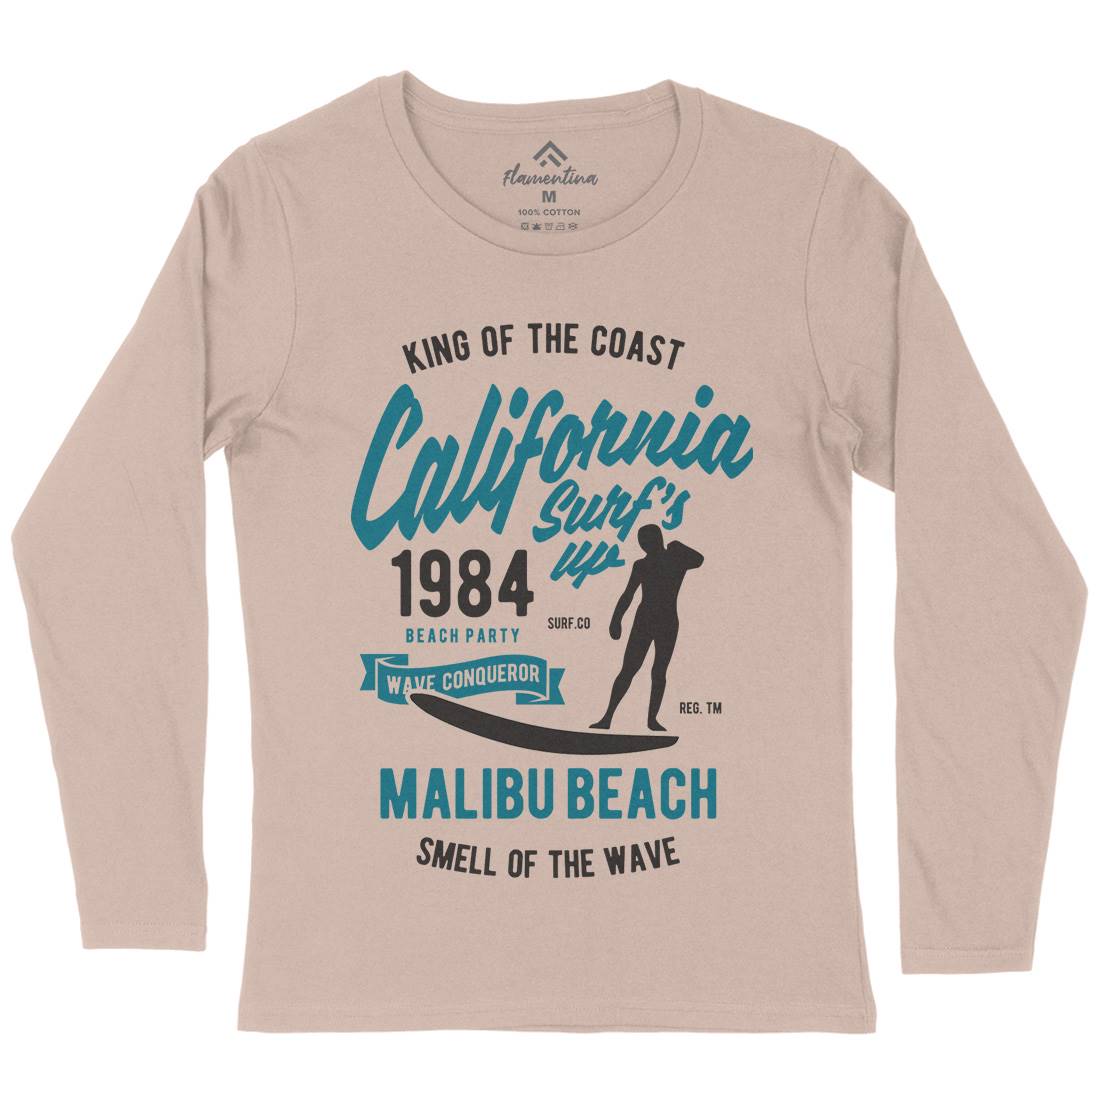 California Surfs Up Womens Long Sleeve T-Shirt Surf B389